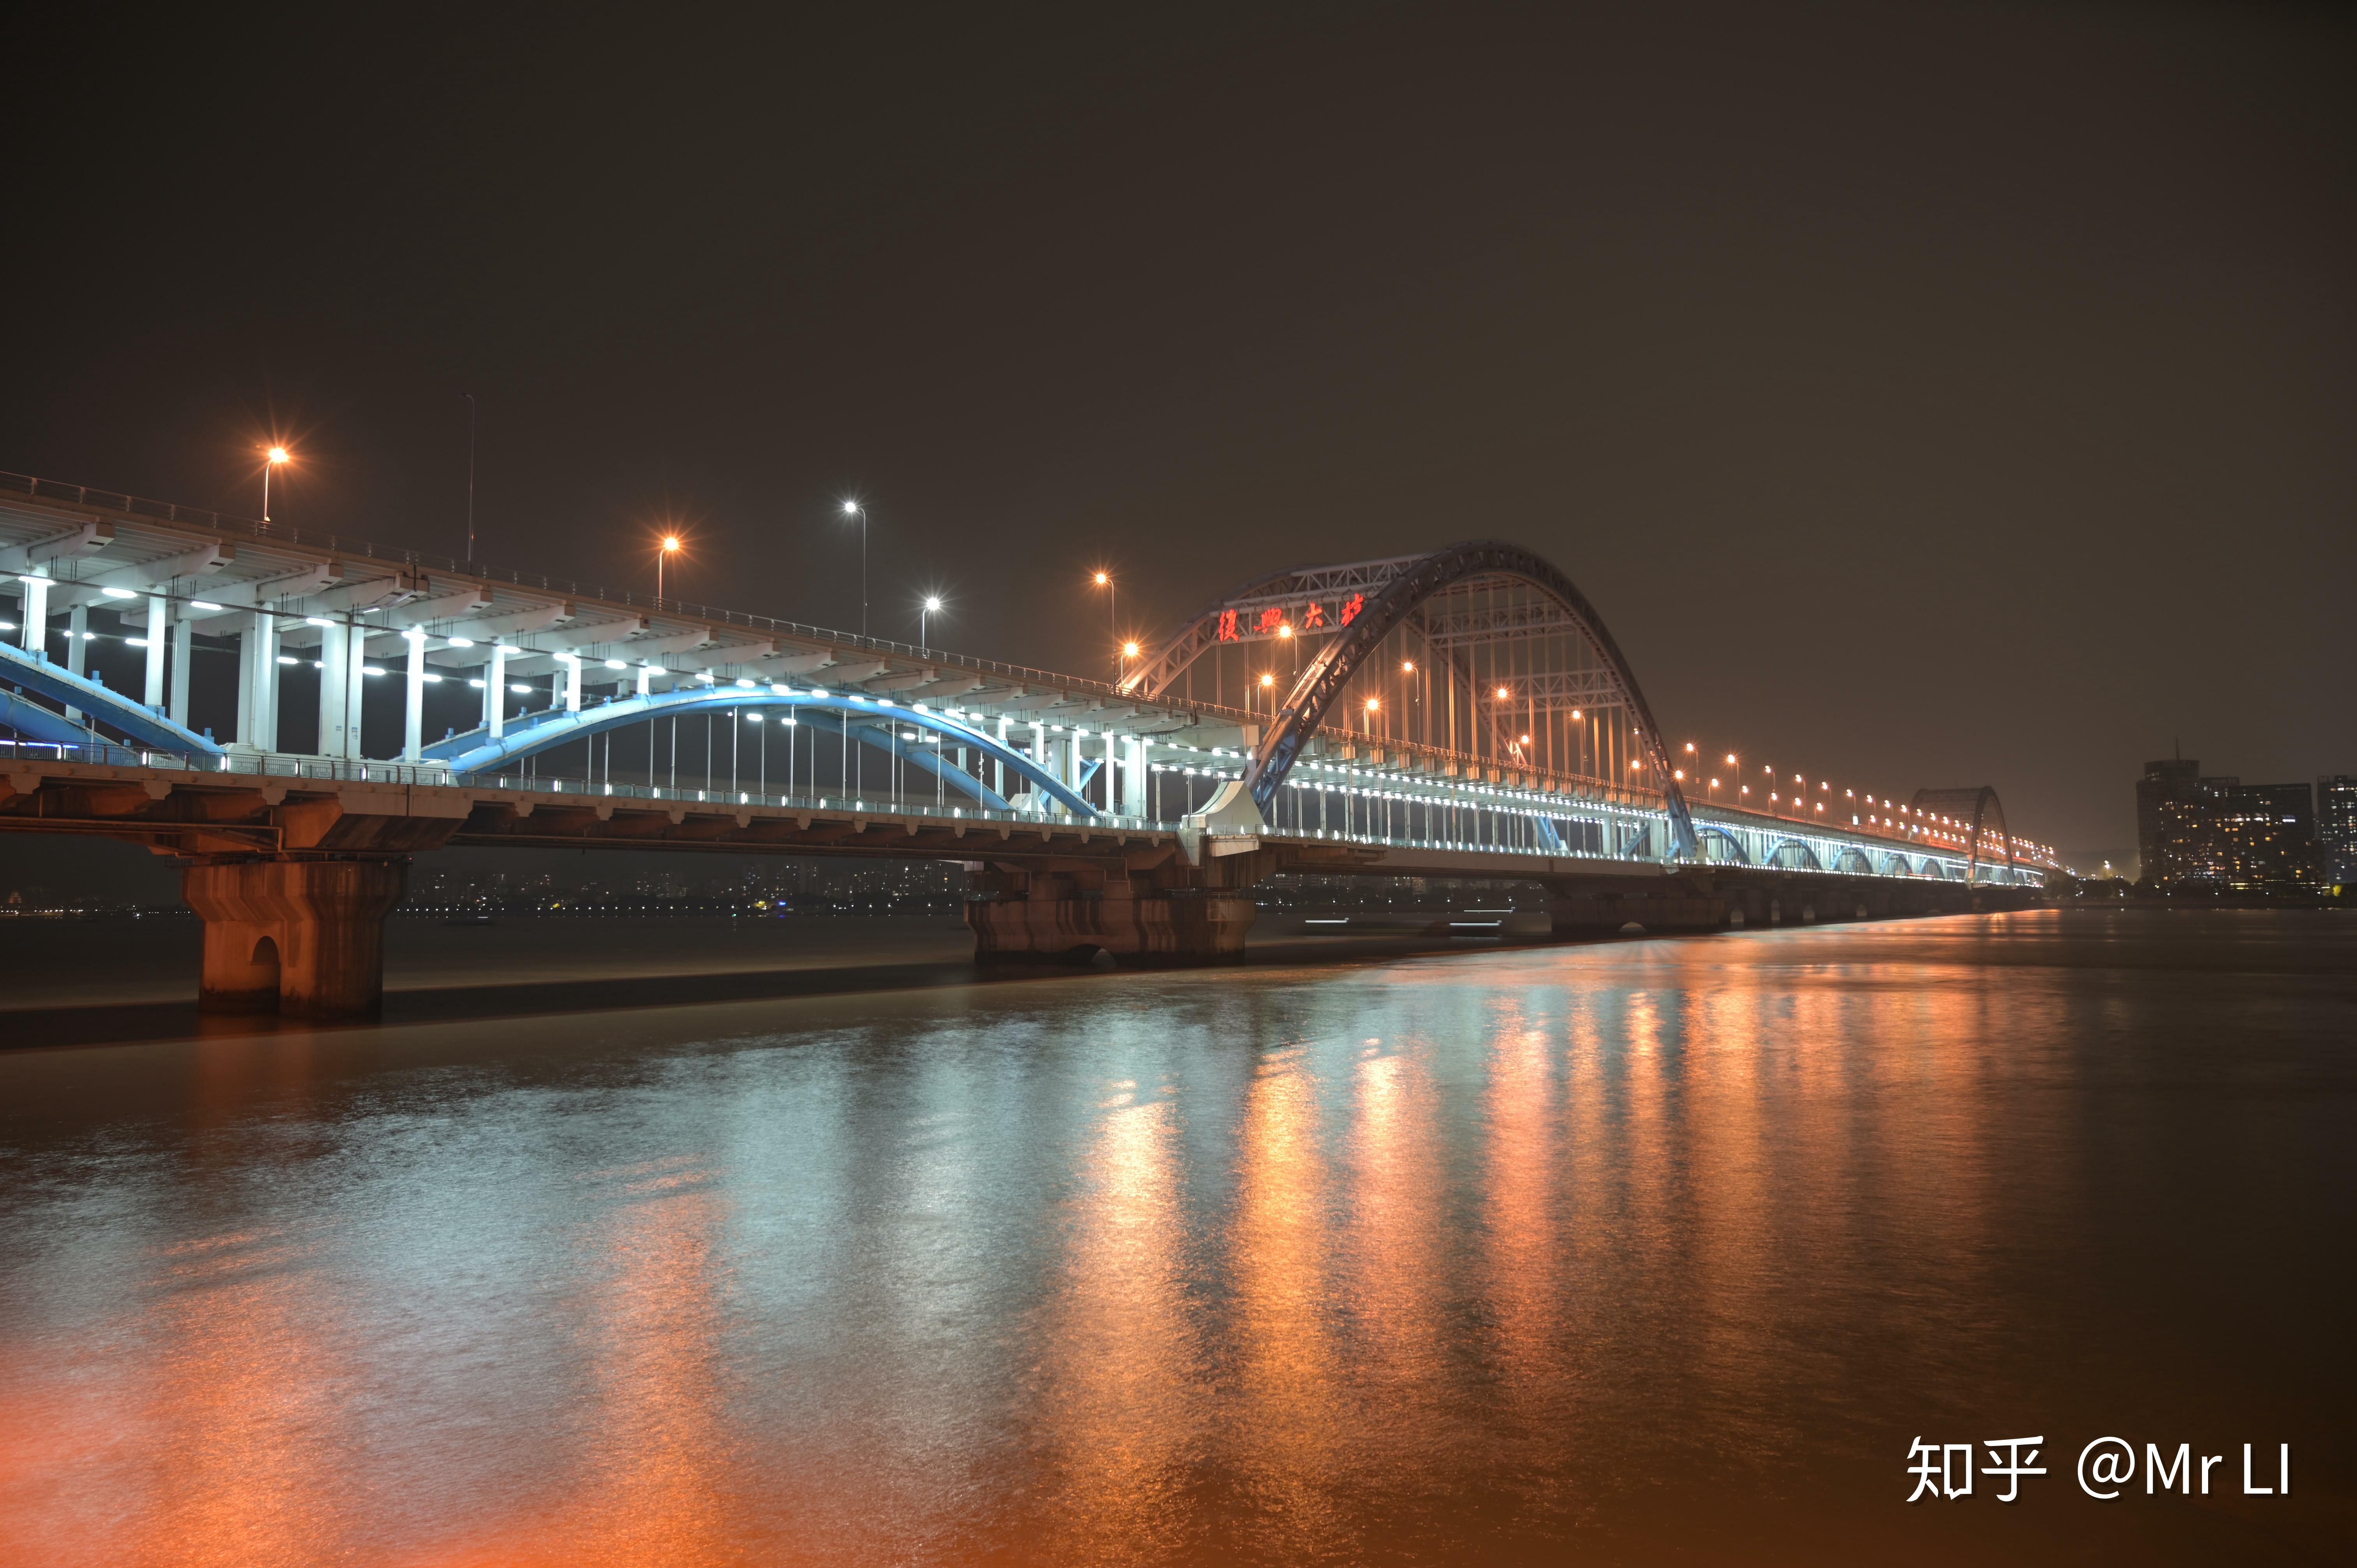 复兴大桥(fuxing bridge),又称钱江四桥,是中国浙江省杭州市境的一座